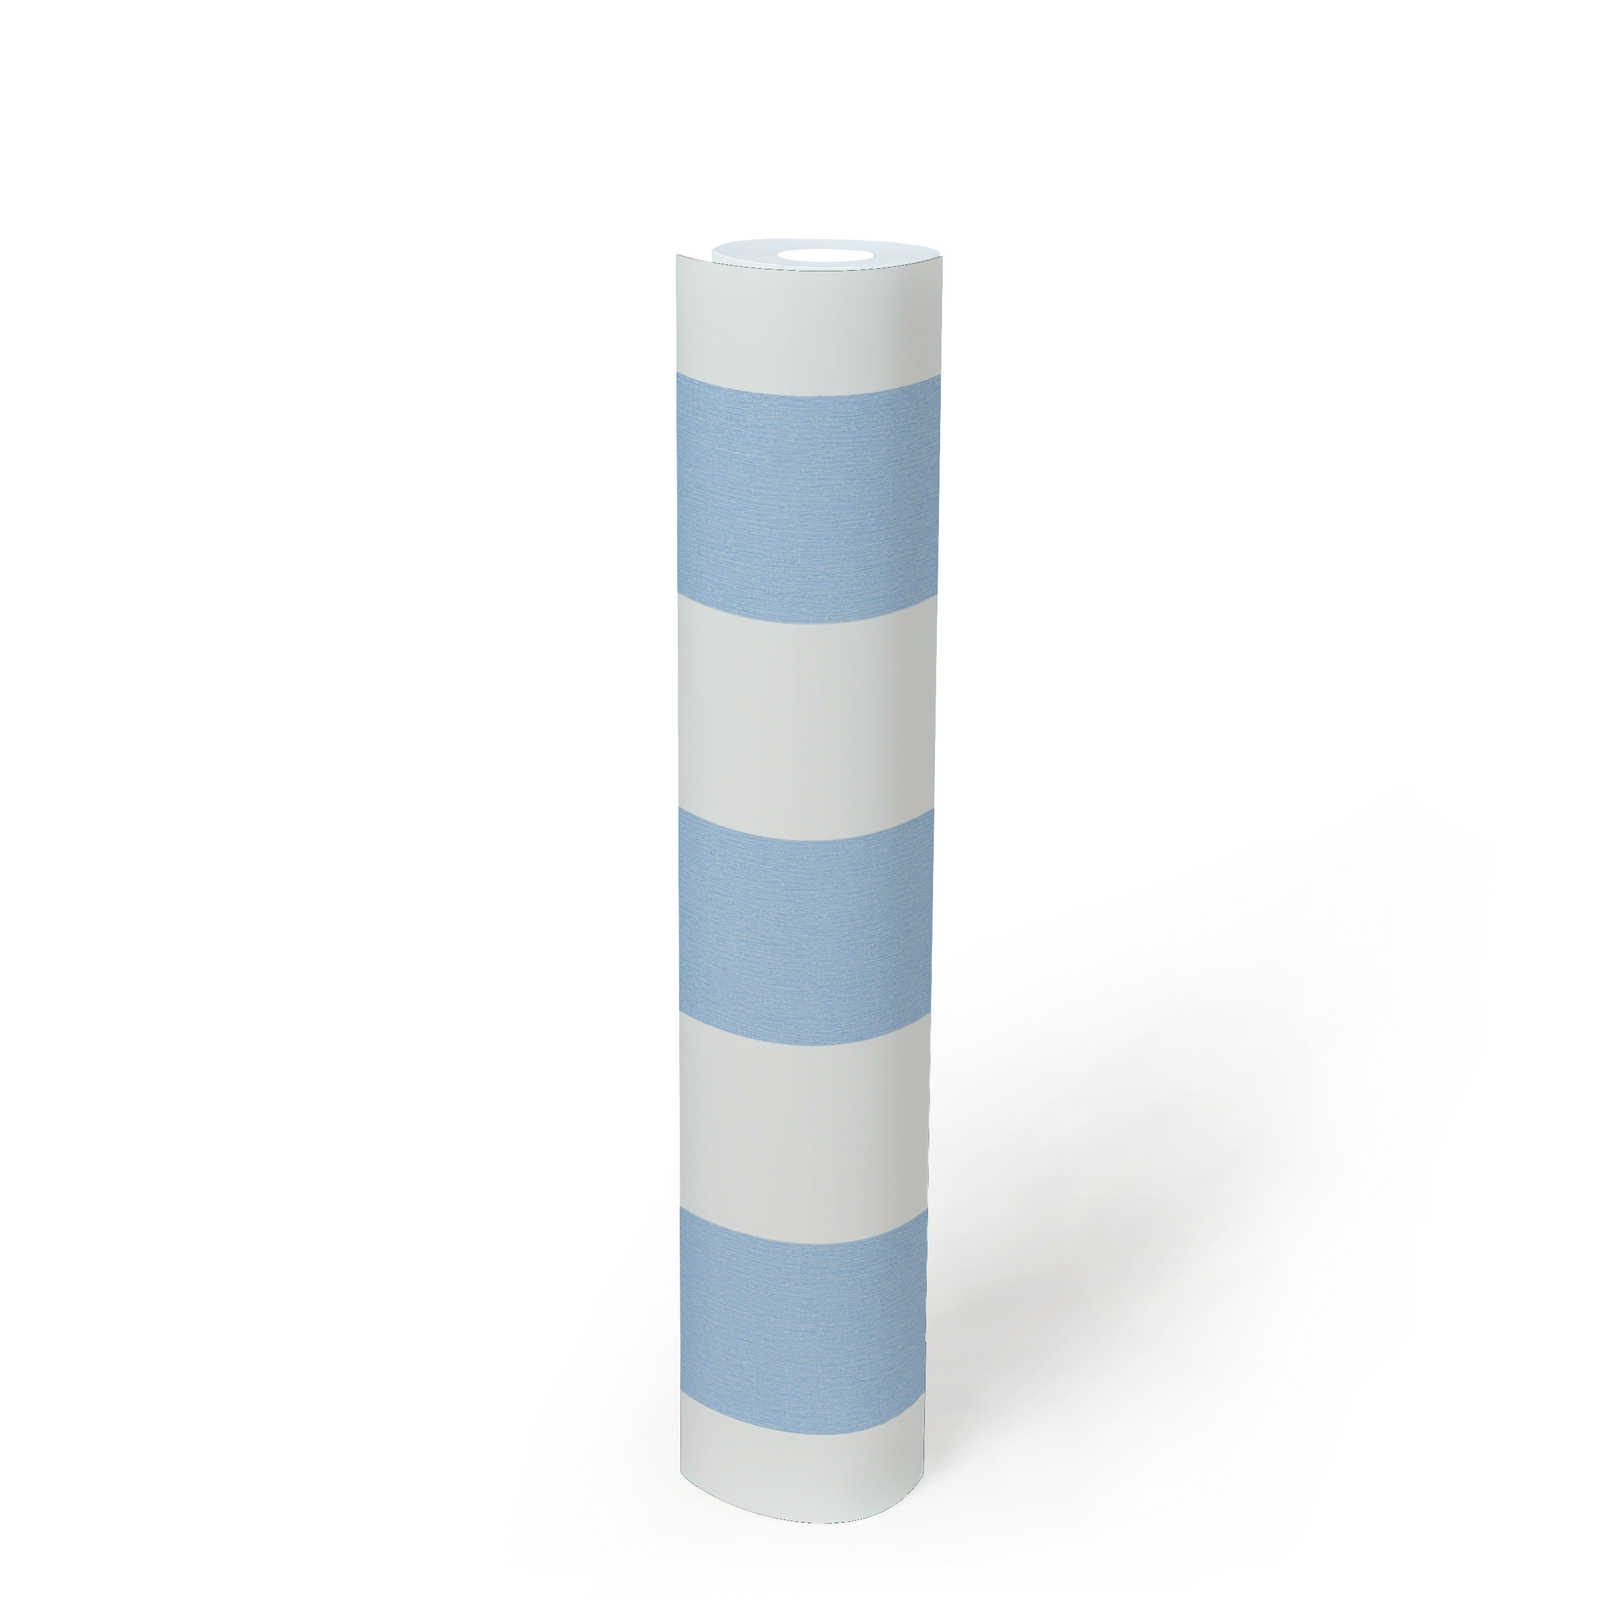             Carta da parati cameretta ragazzo a righe verticali - blu, bianco
        